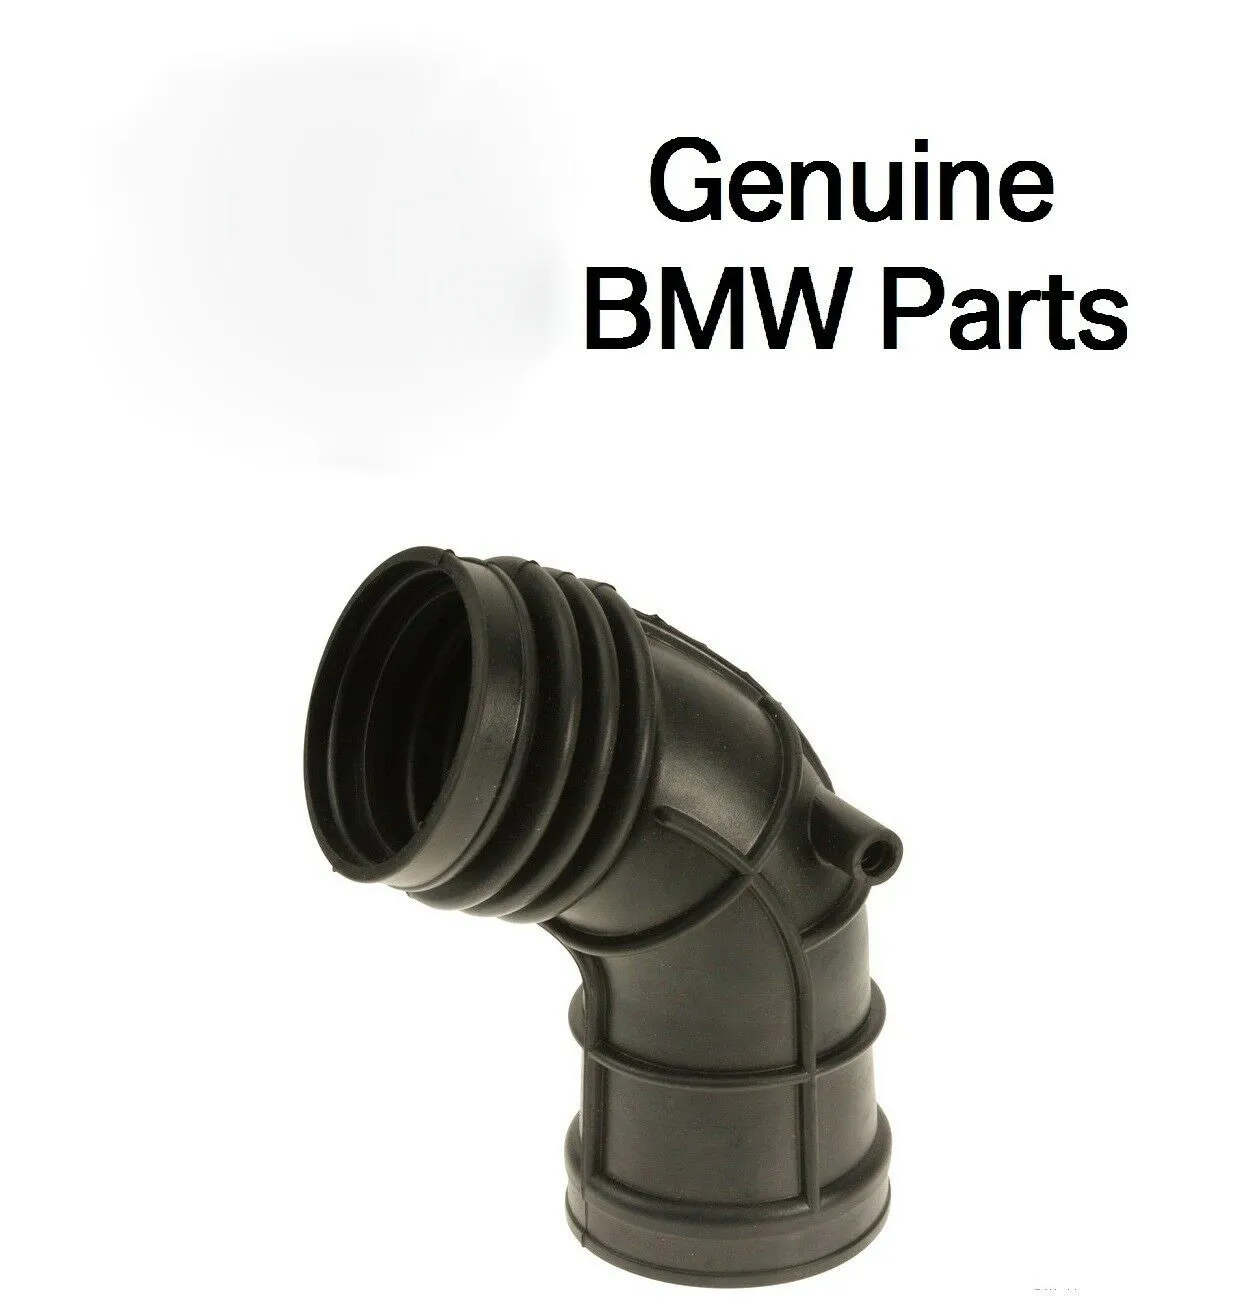 BMW E46 323i E36 Z3 OE에 대한 연료 분사 자동차 부품 공기 유량계 진짜 흡기 부츠 : 13541705209 섭취